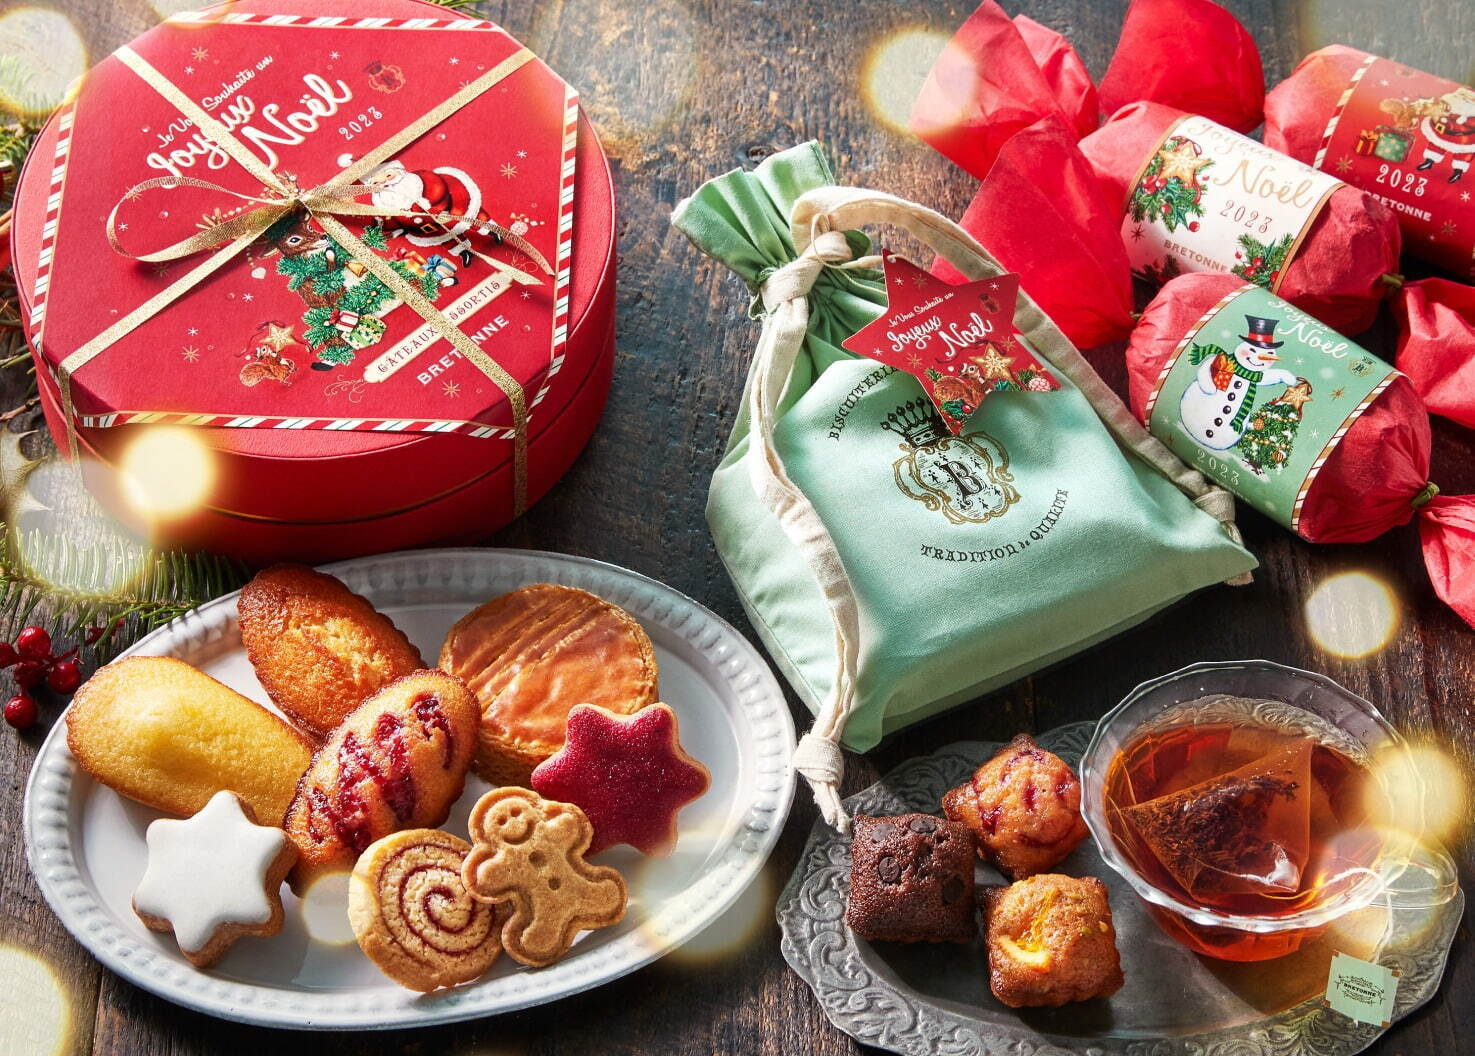 ビスキュイテリエ ブルトンヌのクリスマス限定焼き菓子、“星型